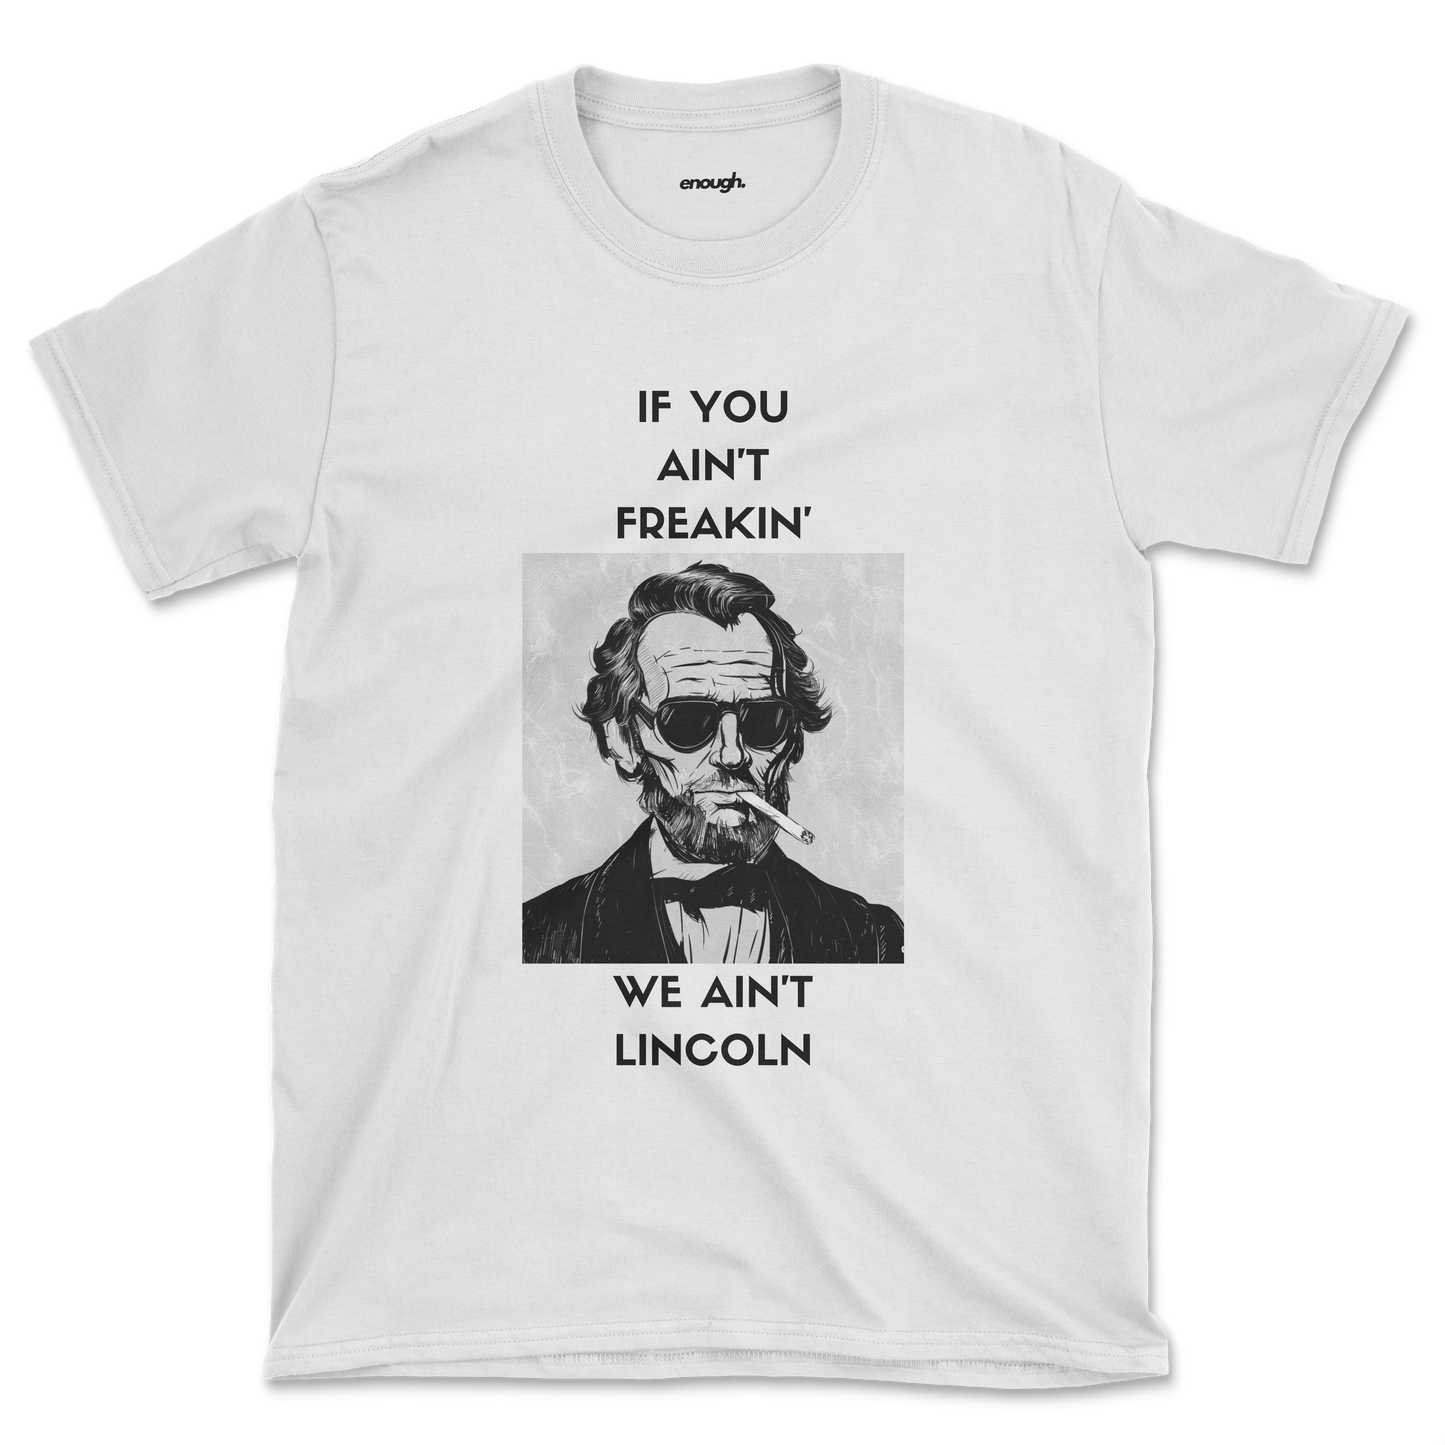 Freakin' Lincoln